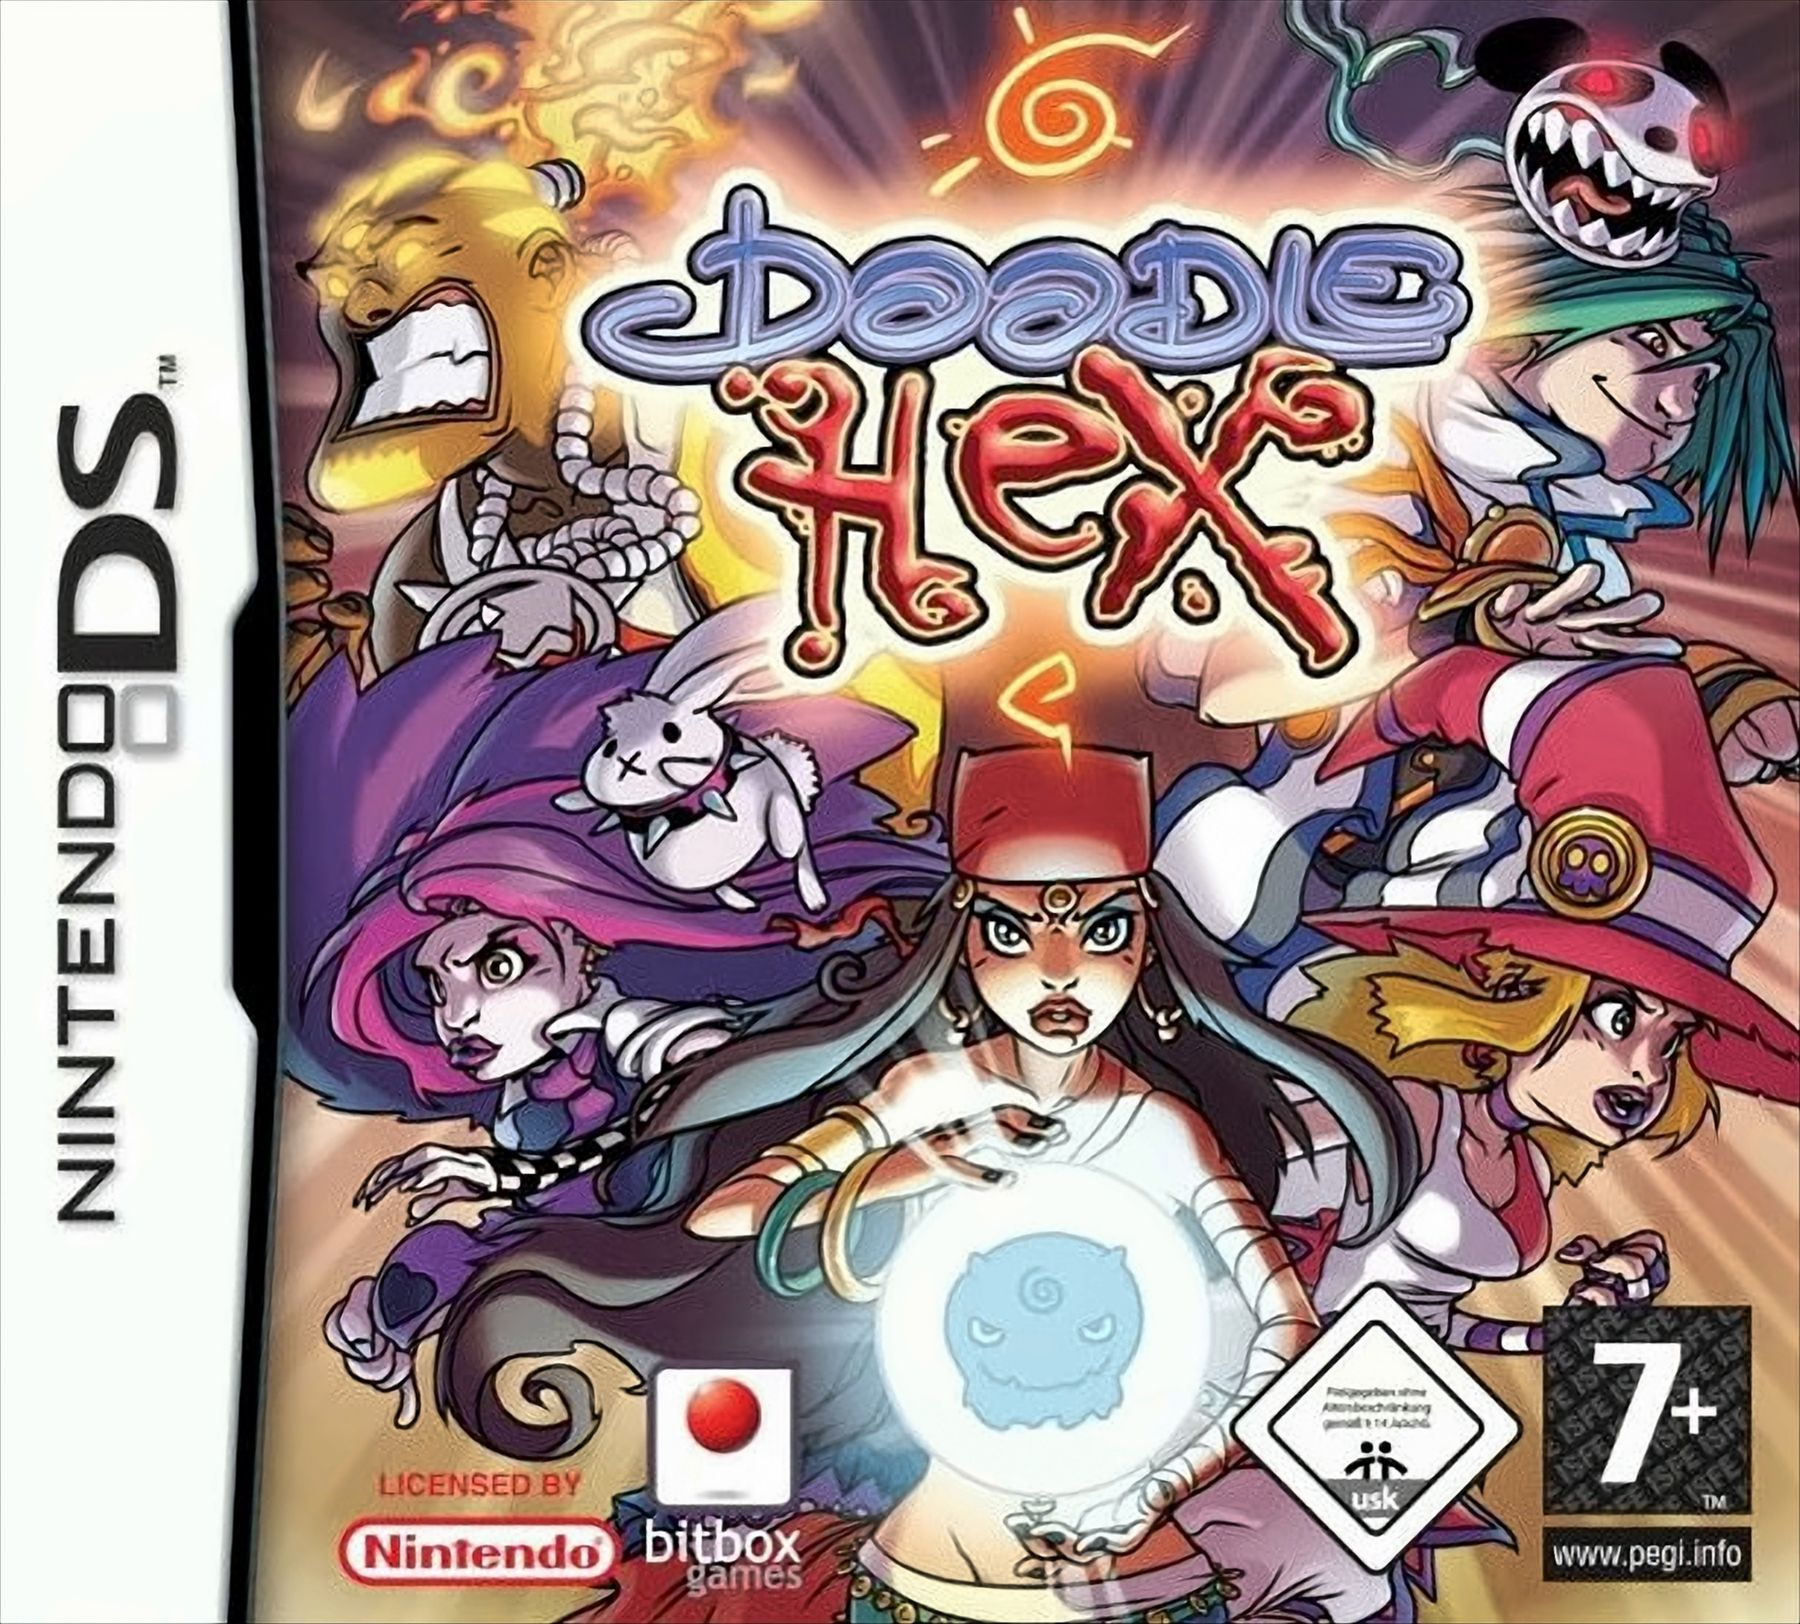 Hex [Nintendo - Doodle DS]